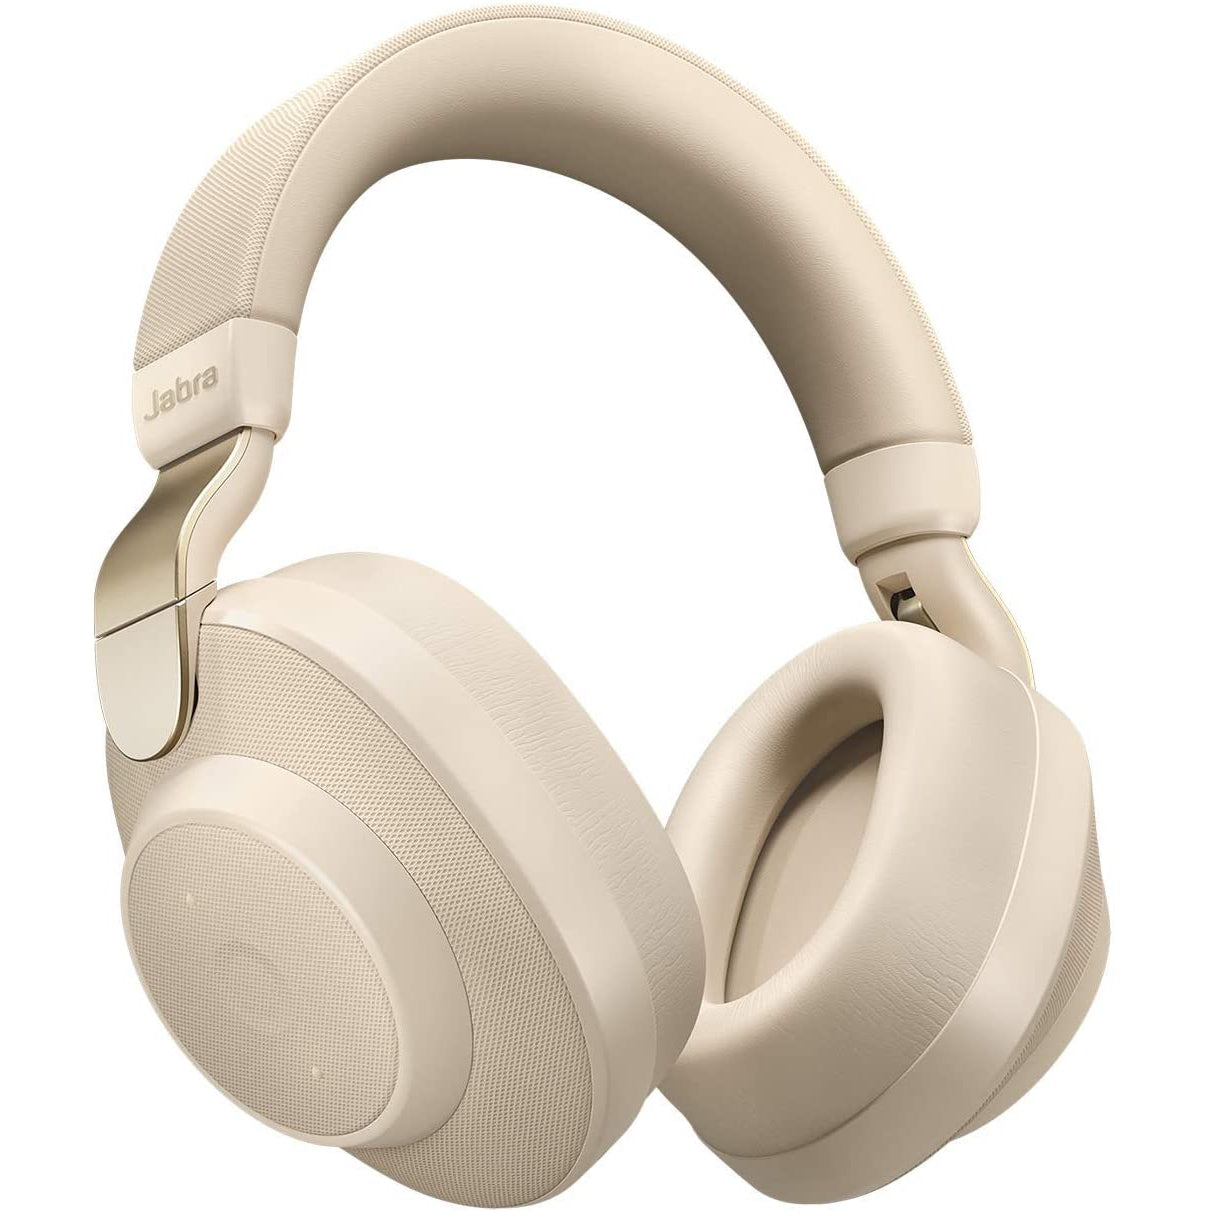 Jabra Elite 85h Over-Ear Headphones Active Noise Cancelling Wireless Earphones - Gold Beige